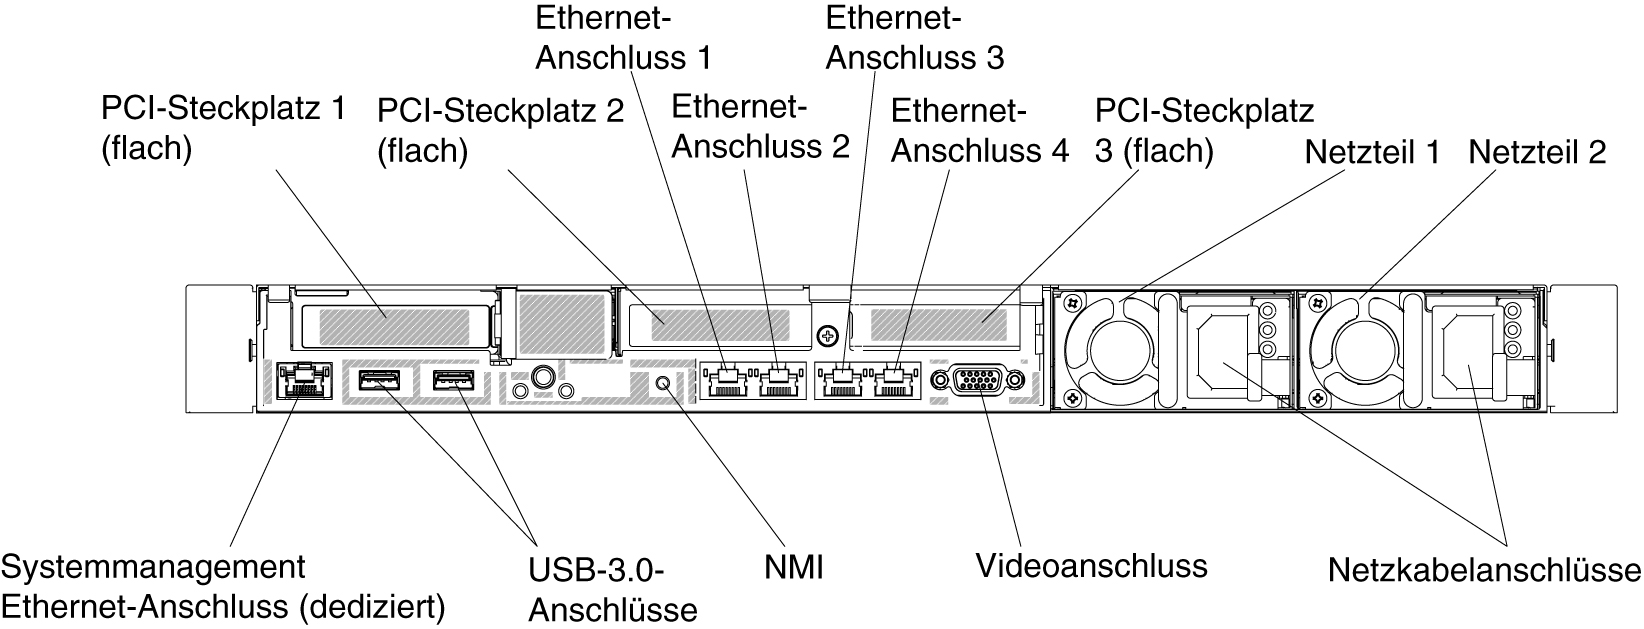 Rückansicht: Konfiguration mit drei flachen PCI-Adapterkartenbaugruppen